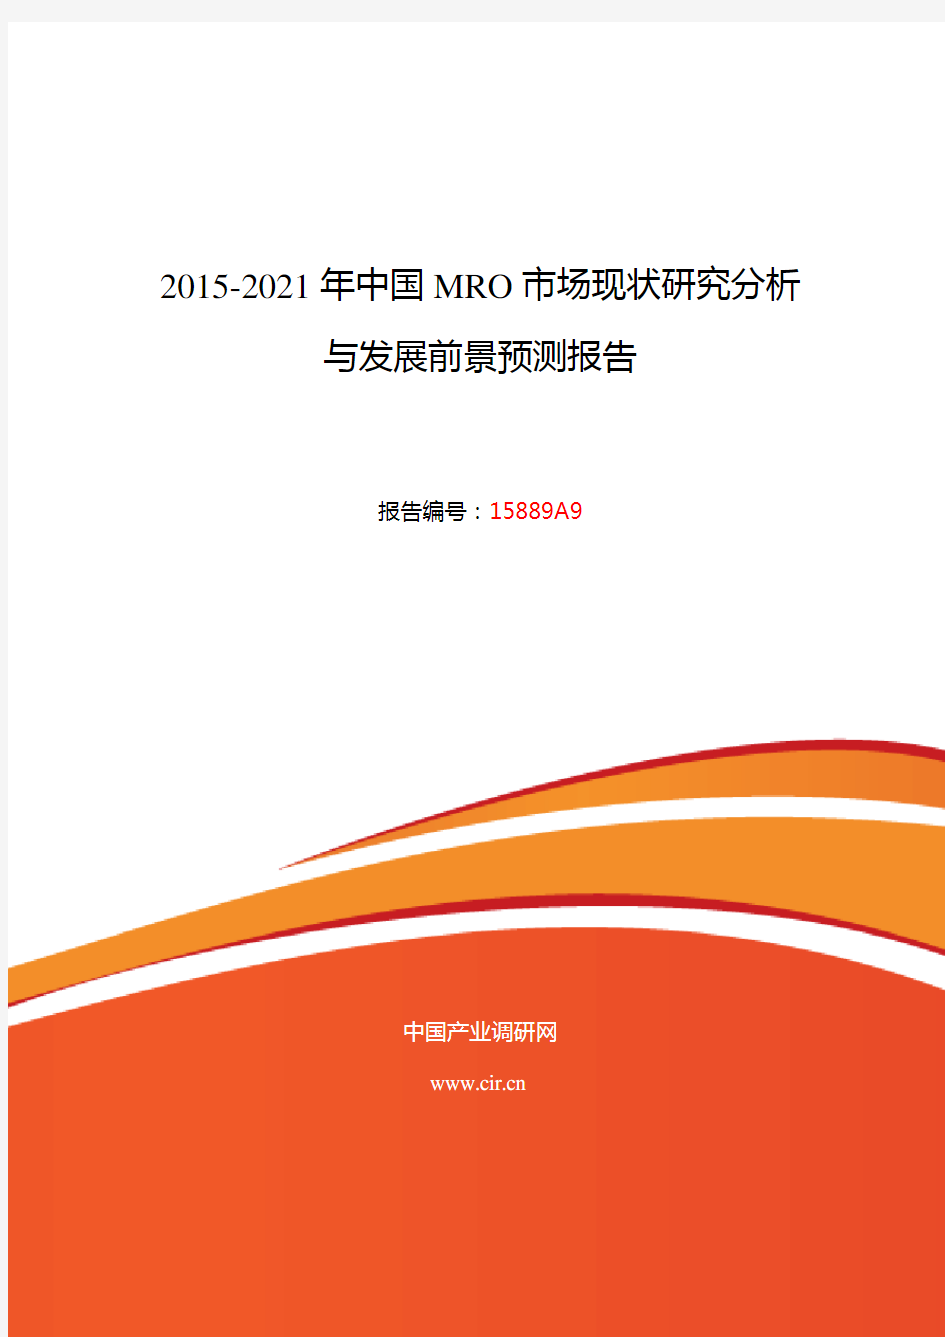 2015年MRO现状及发展趋势分析